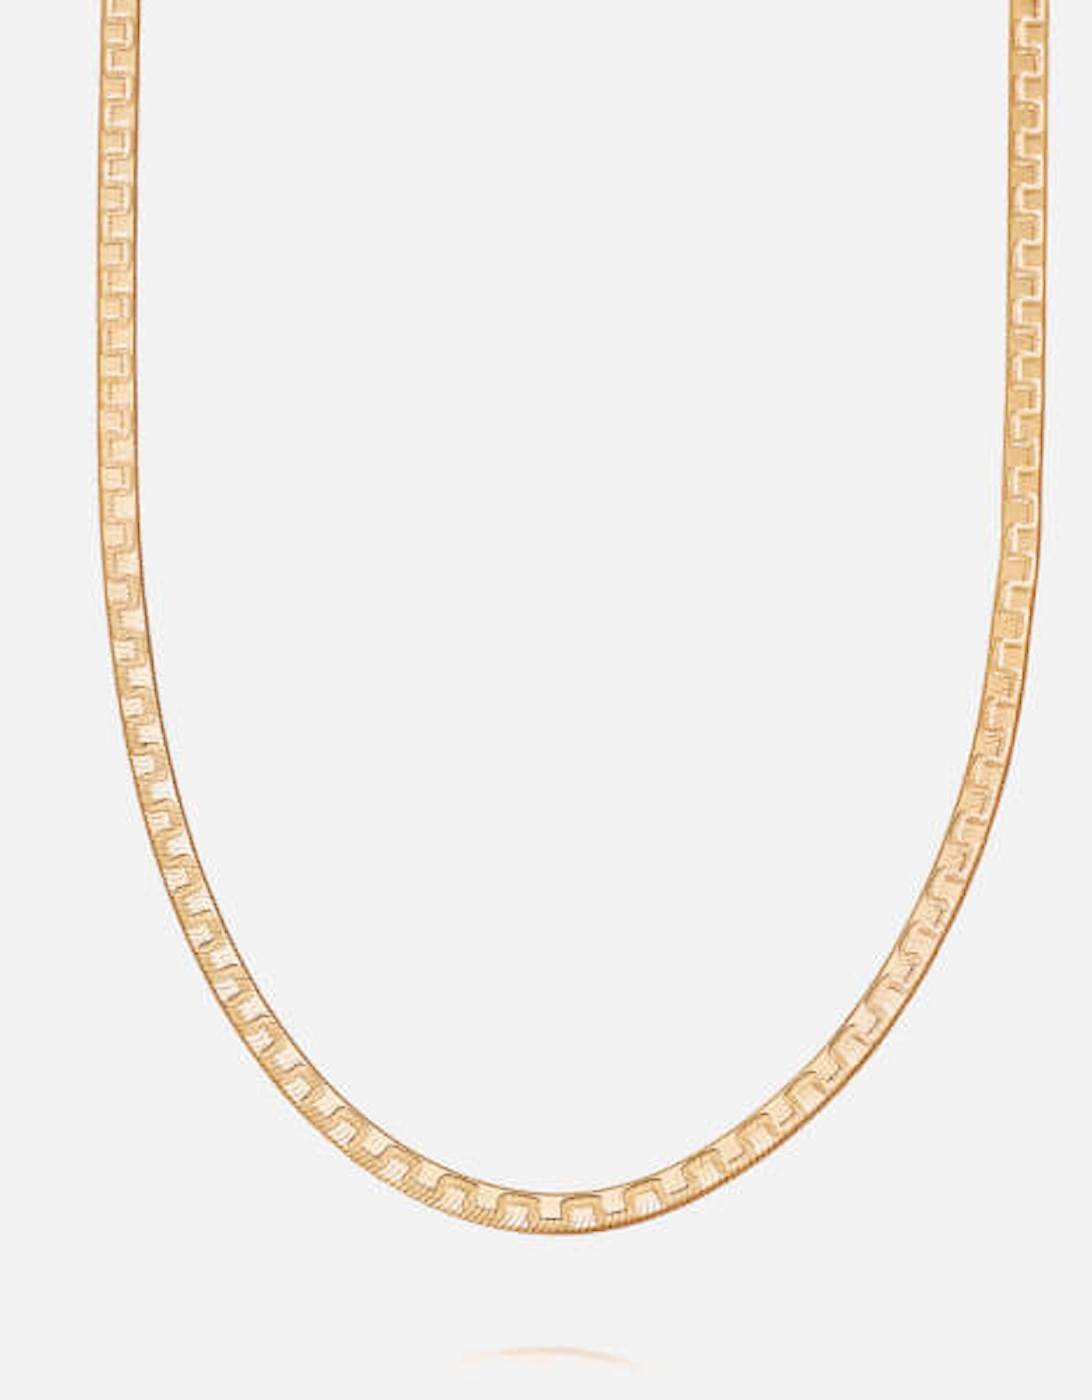 Estée Lalonde Goddess 18-Karat Gold-Plated Necklace, 2 of 1